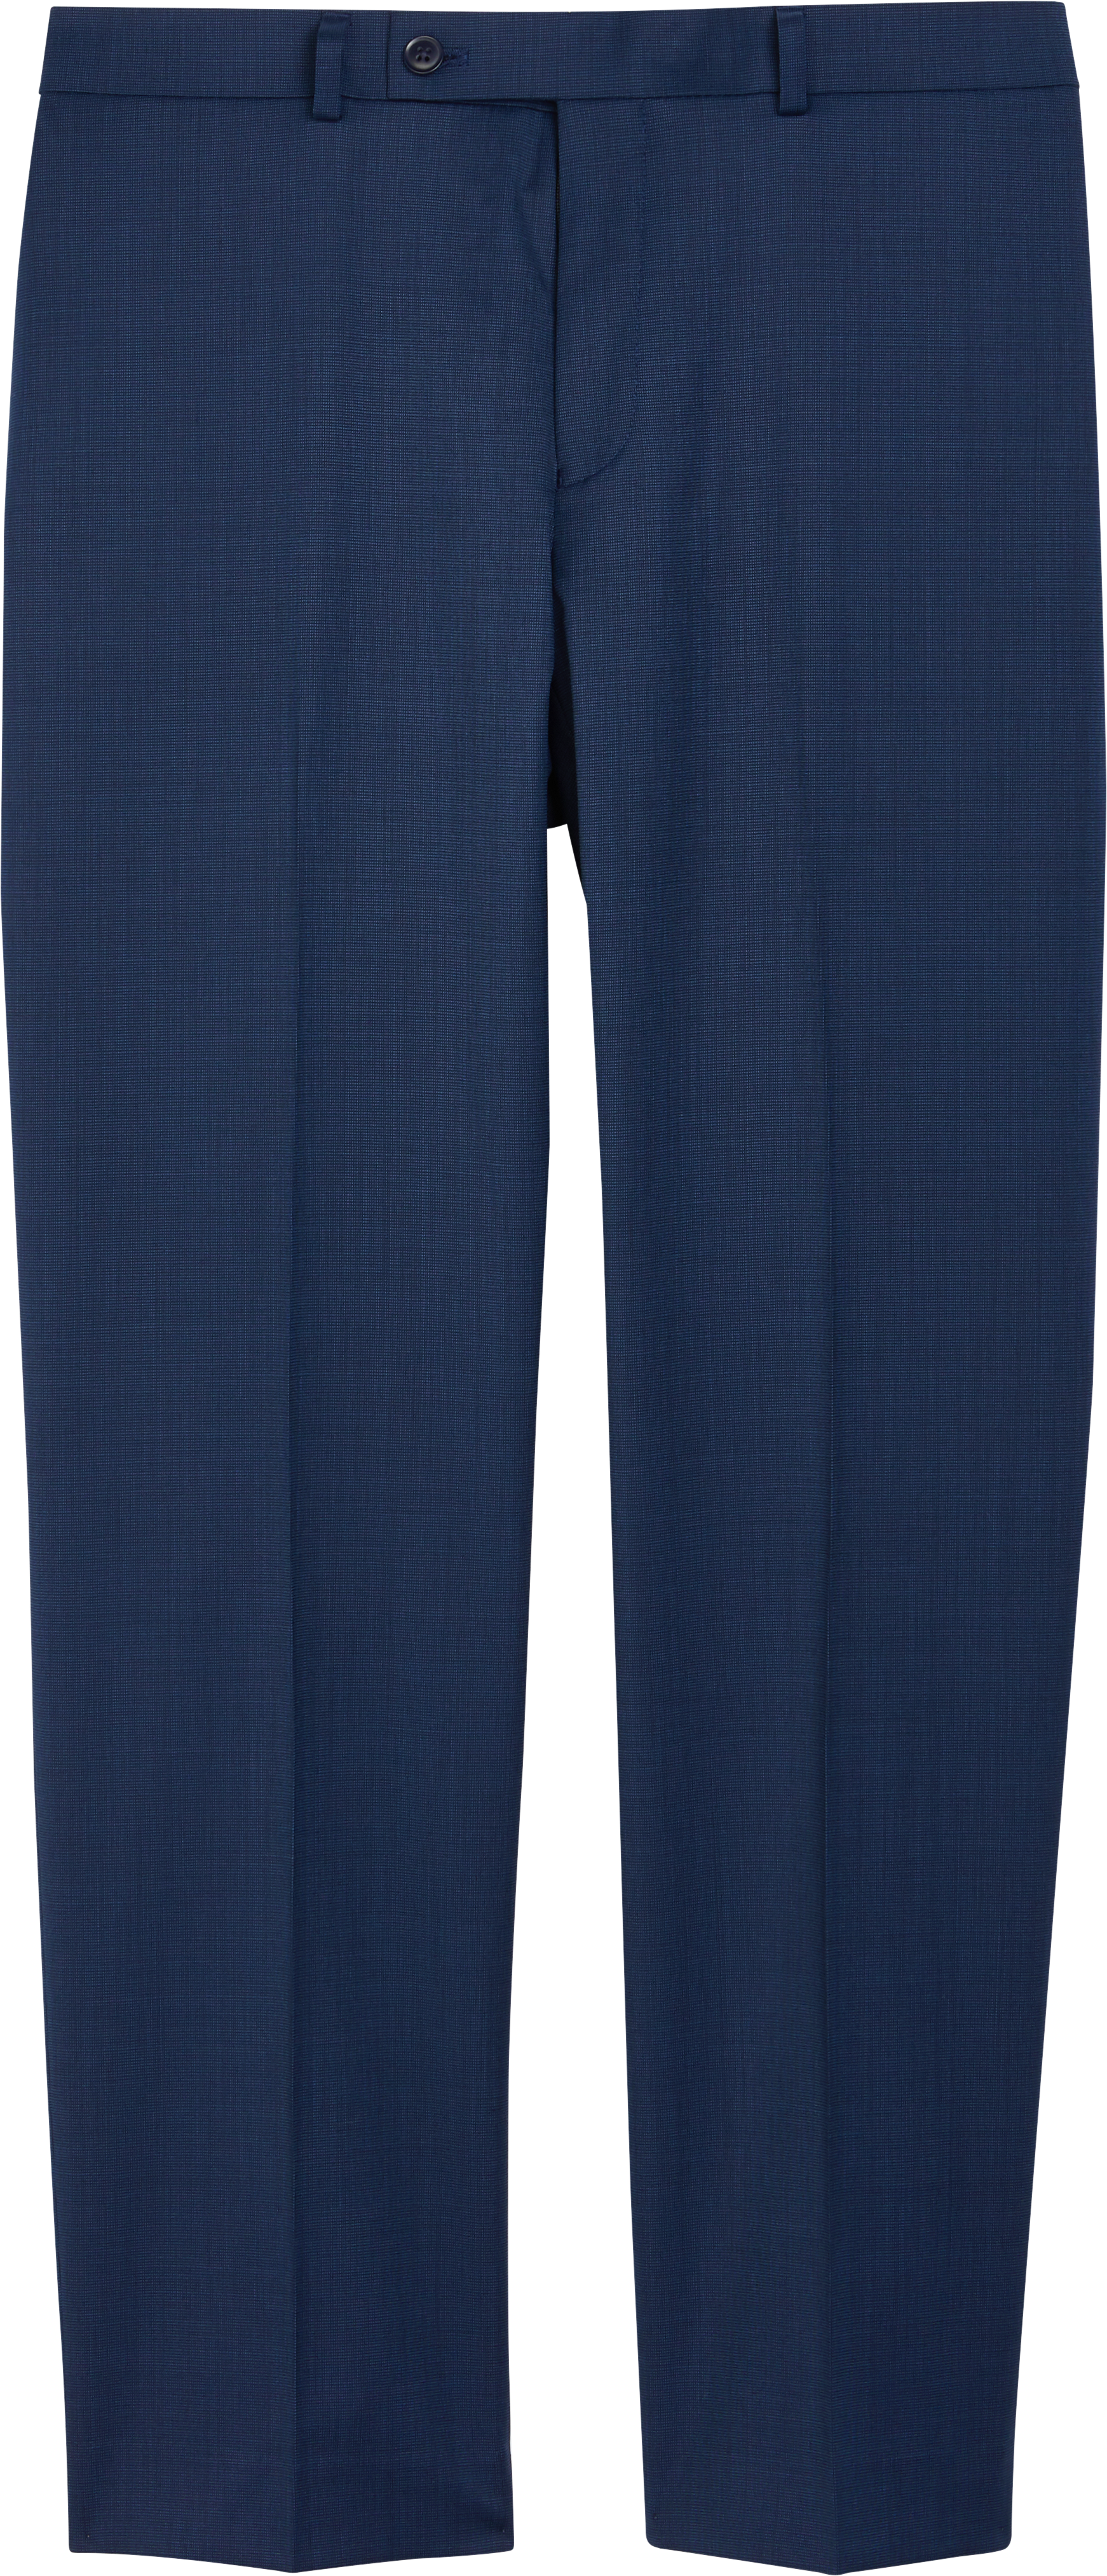 Collection By Michael Strahan Postman Blue Classic Fit Suit Separates Pants Mens Suits Men 